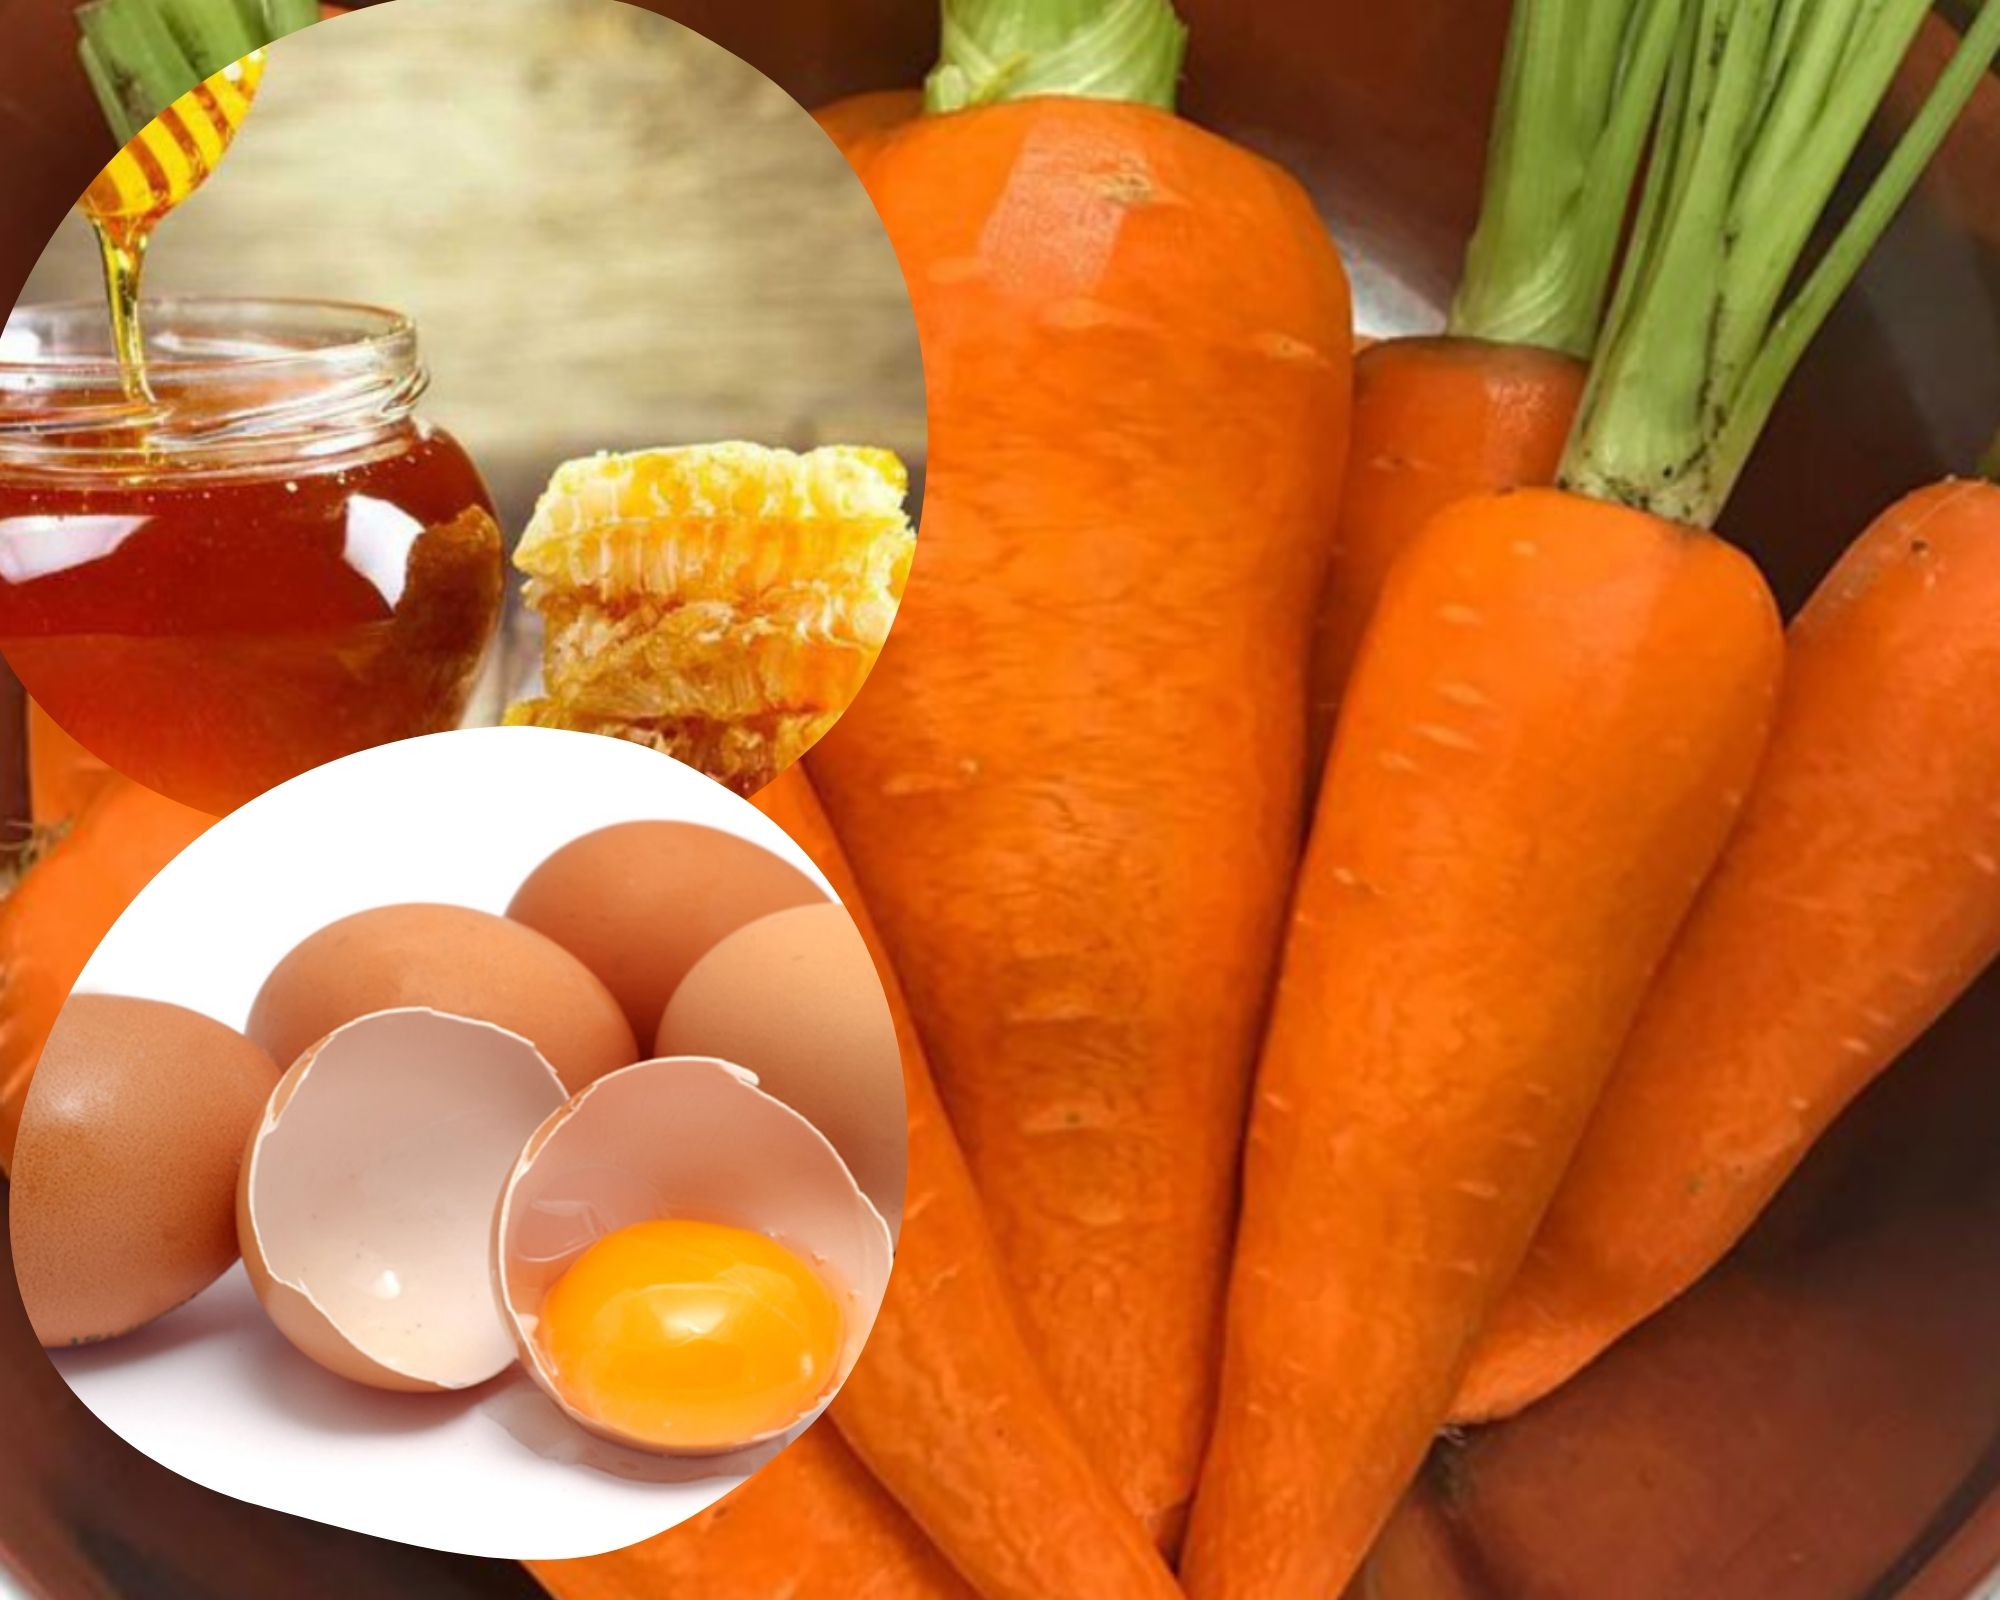 trứng gà kết hợp với mật ong và cà rốt, giúp tăng cường sinh lý, kéo dài thời gian "yêu" hiệu quả